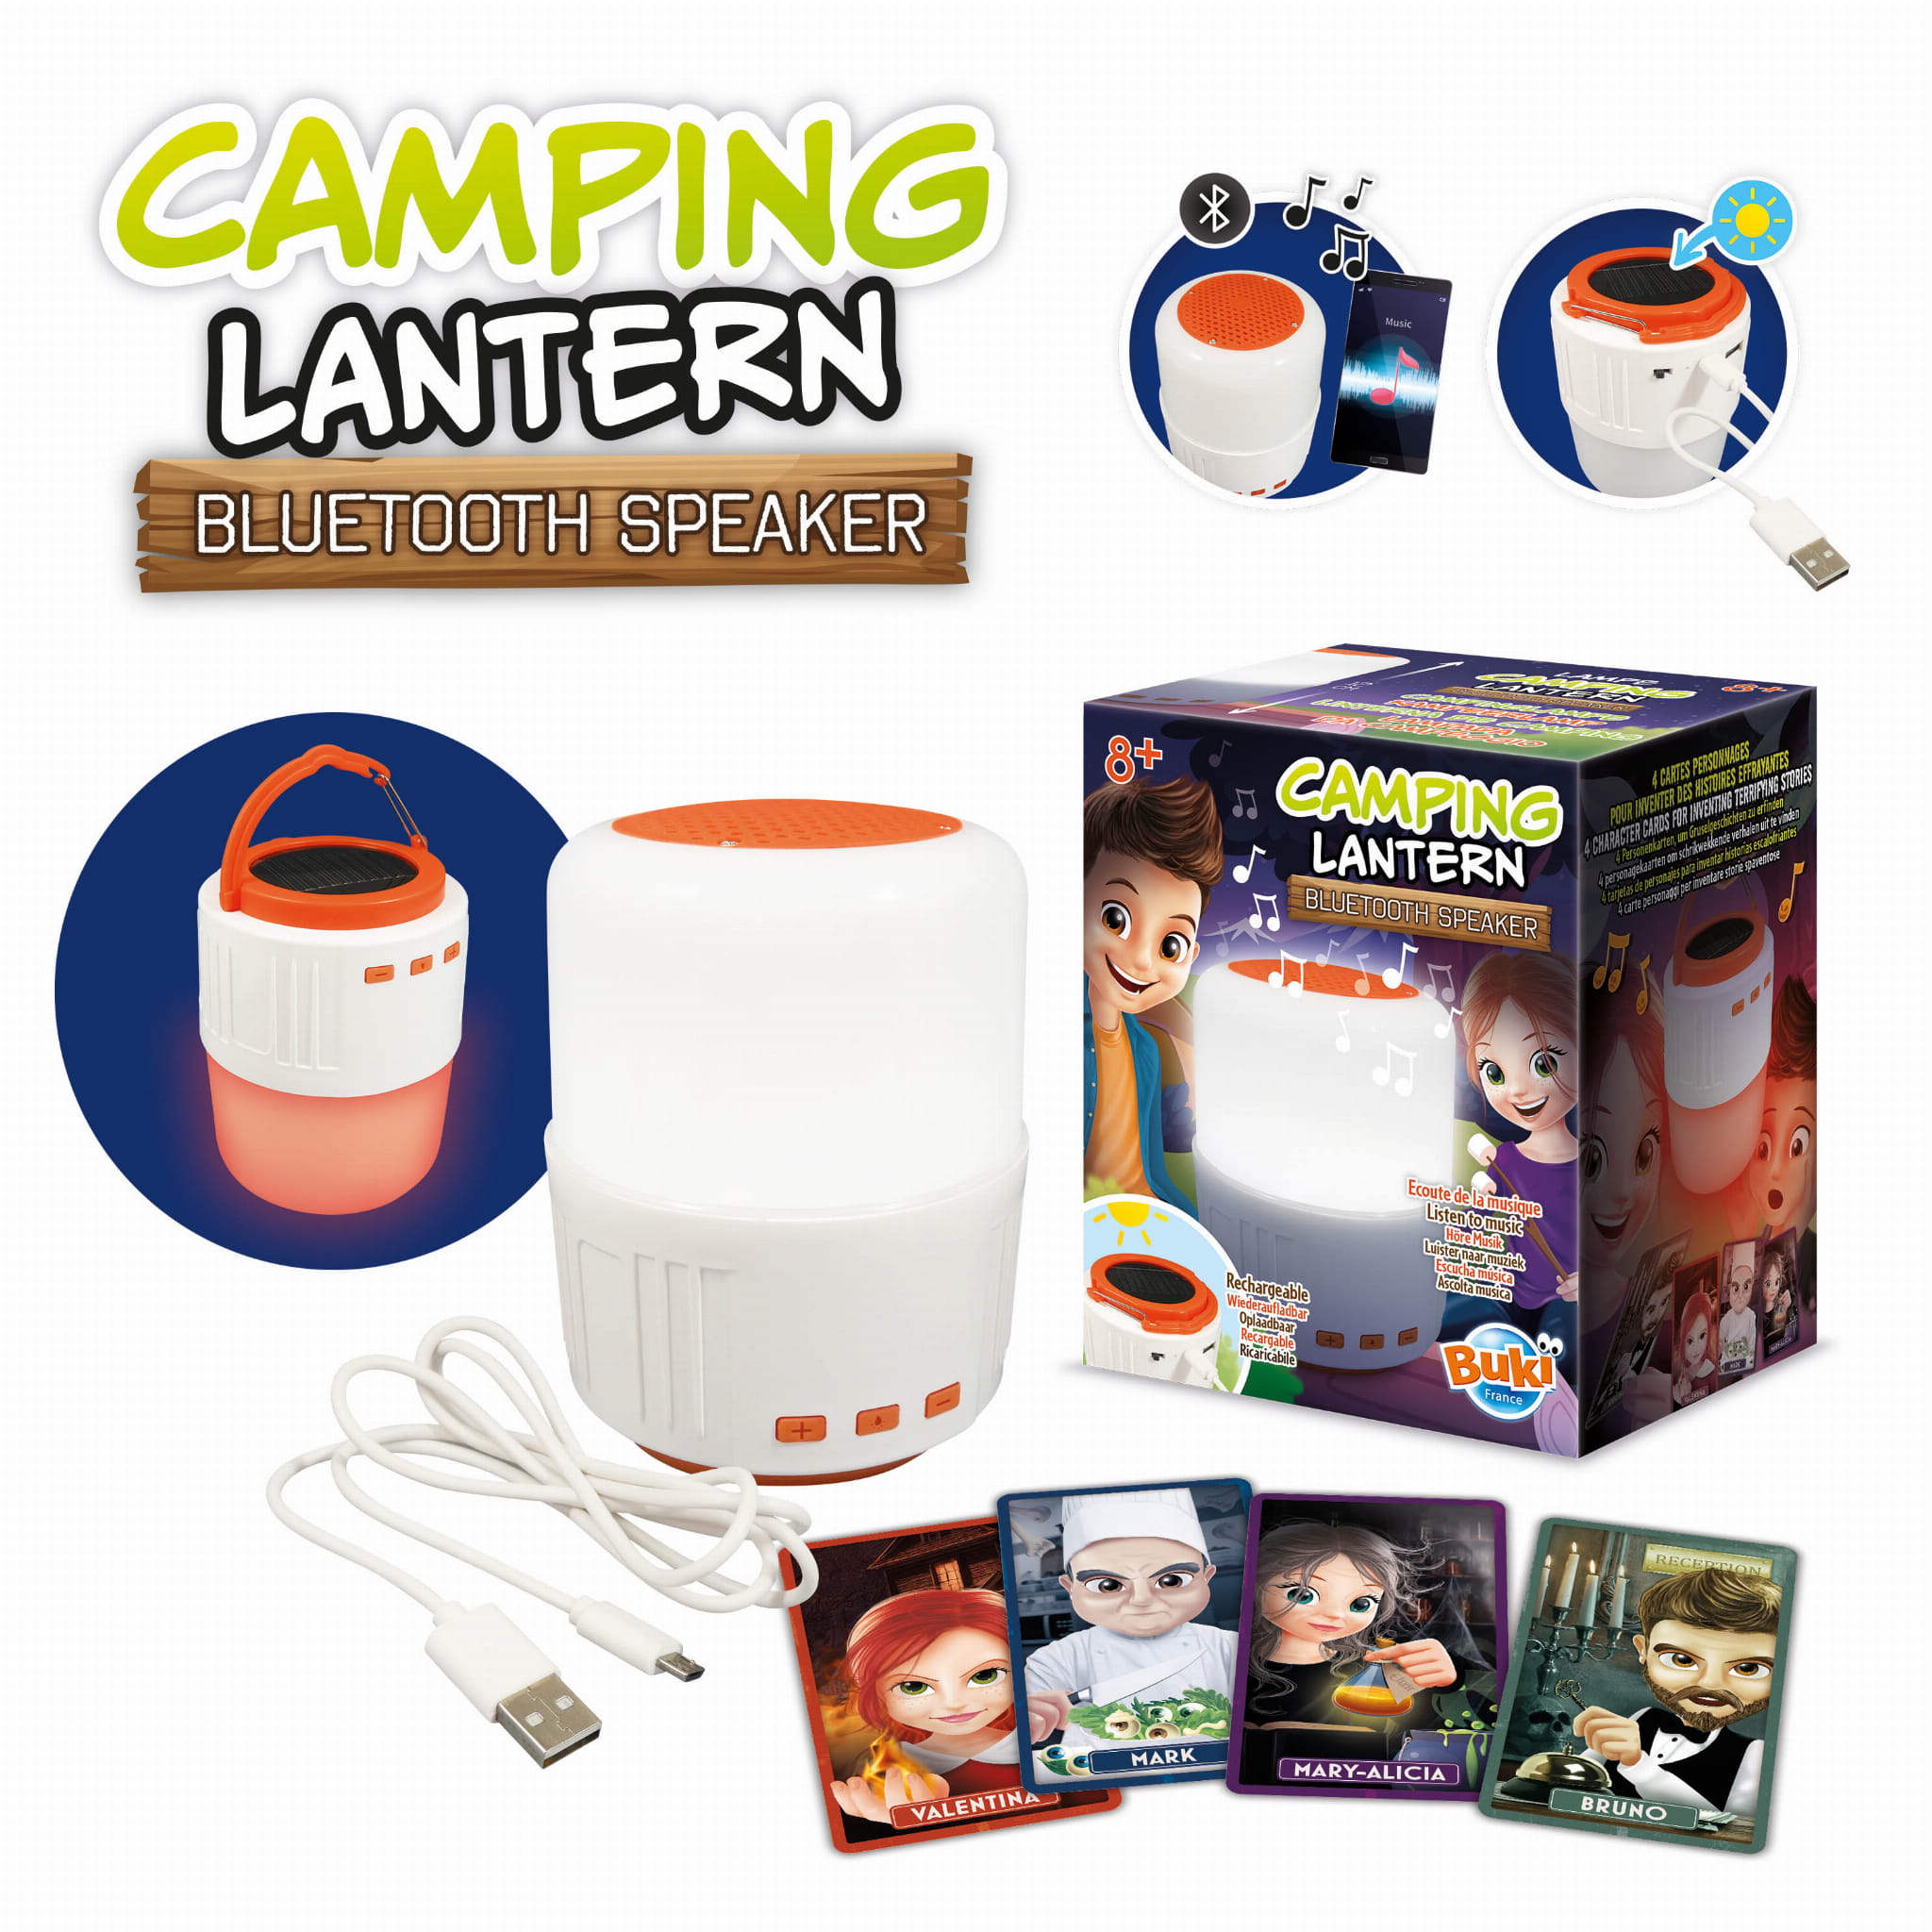 Buki: lampe de poche Bluetooth pour le camping